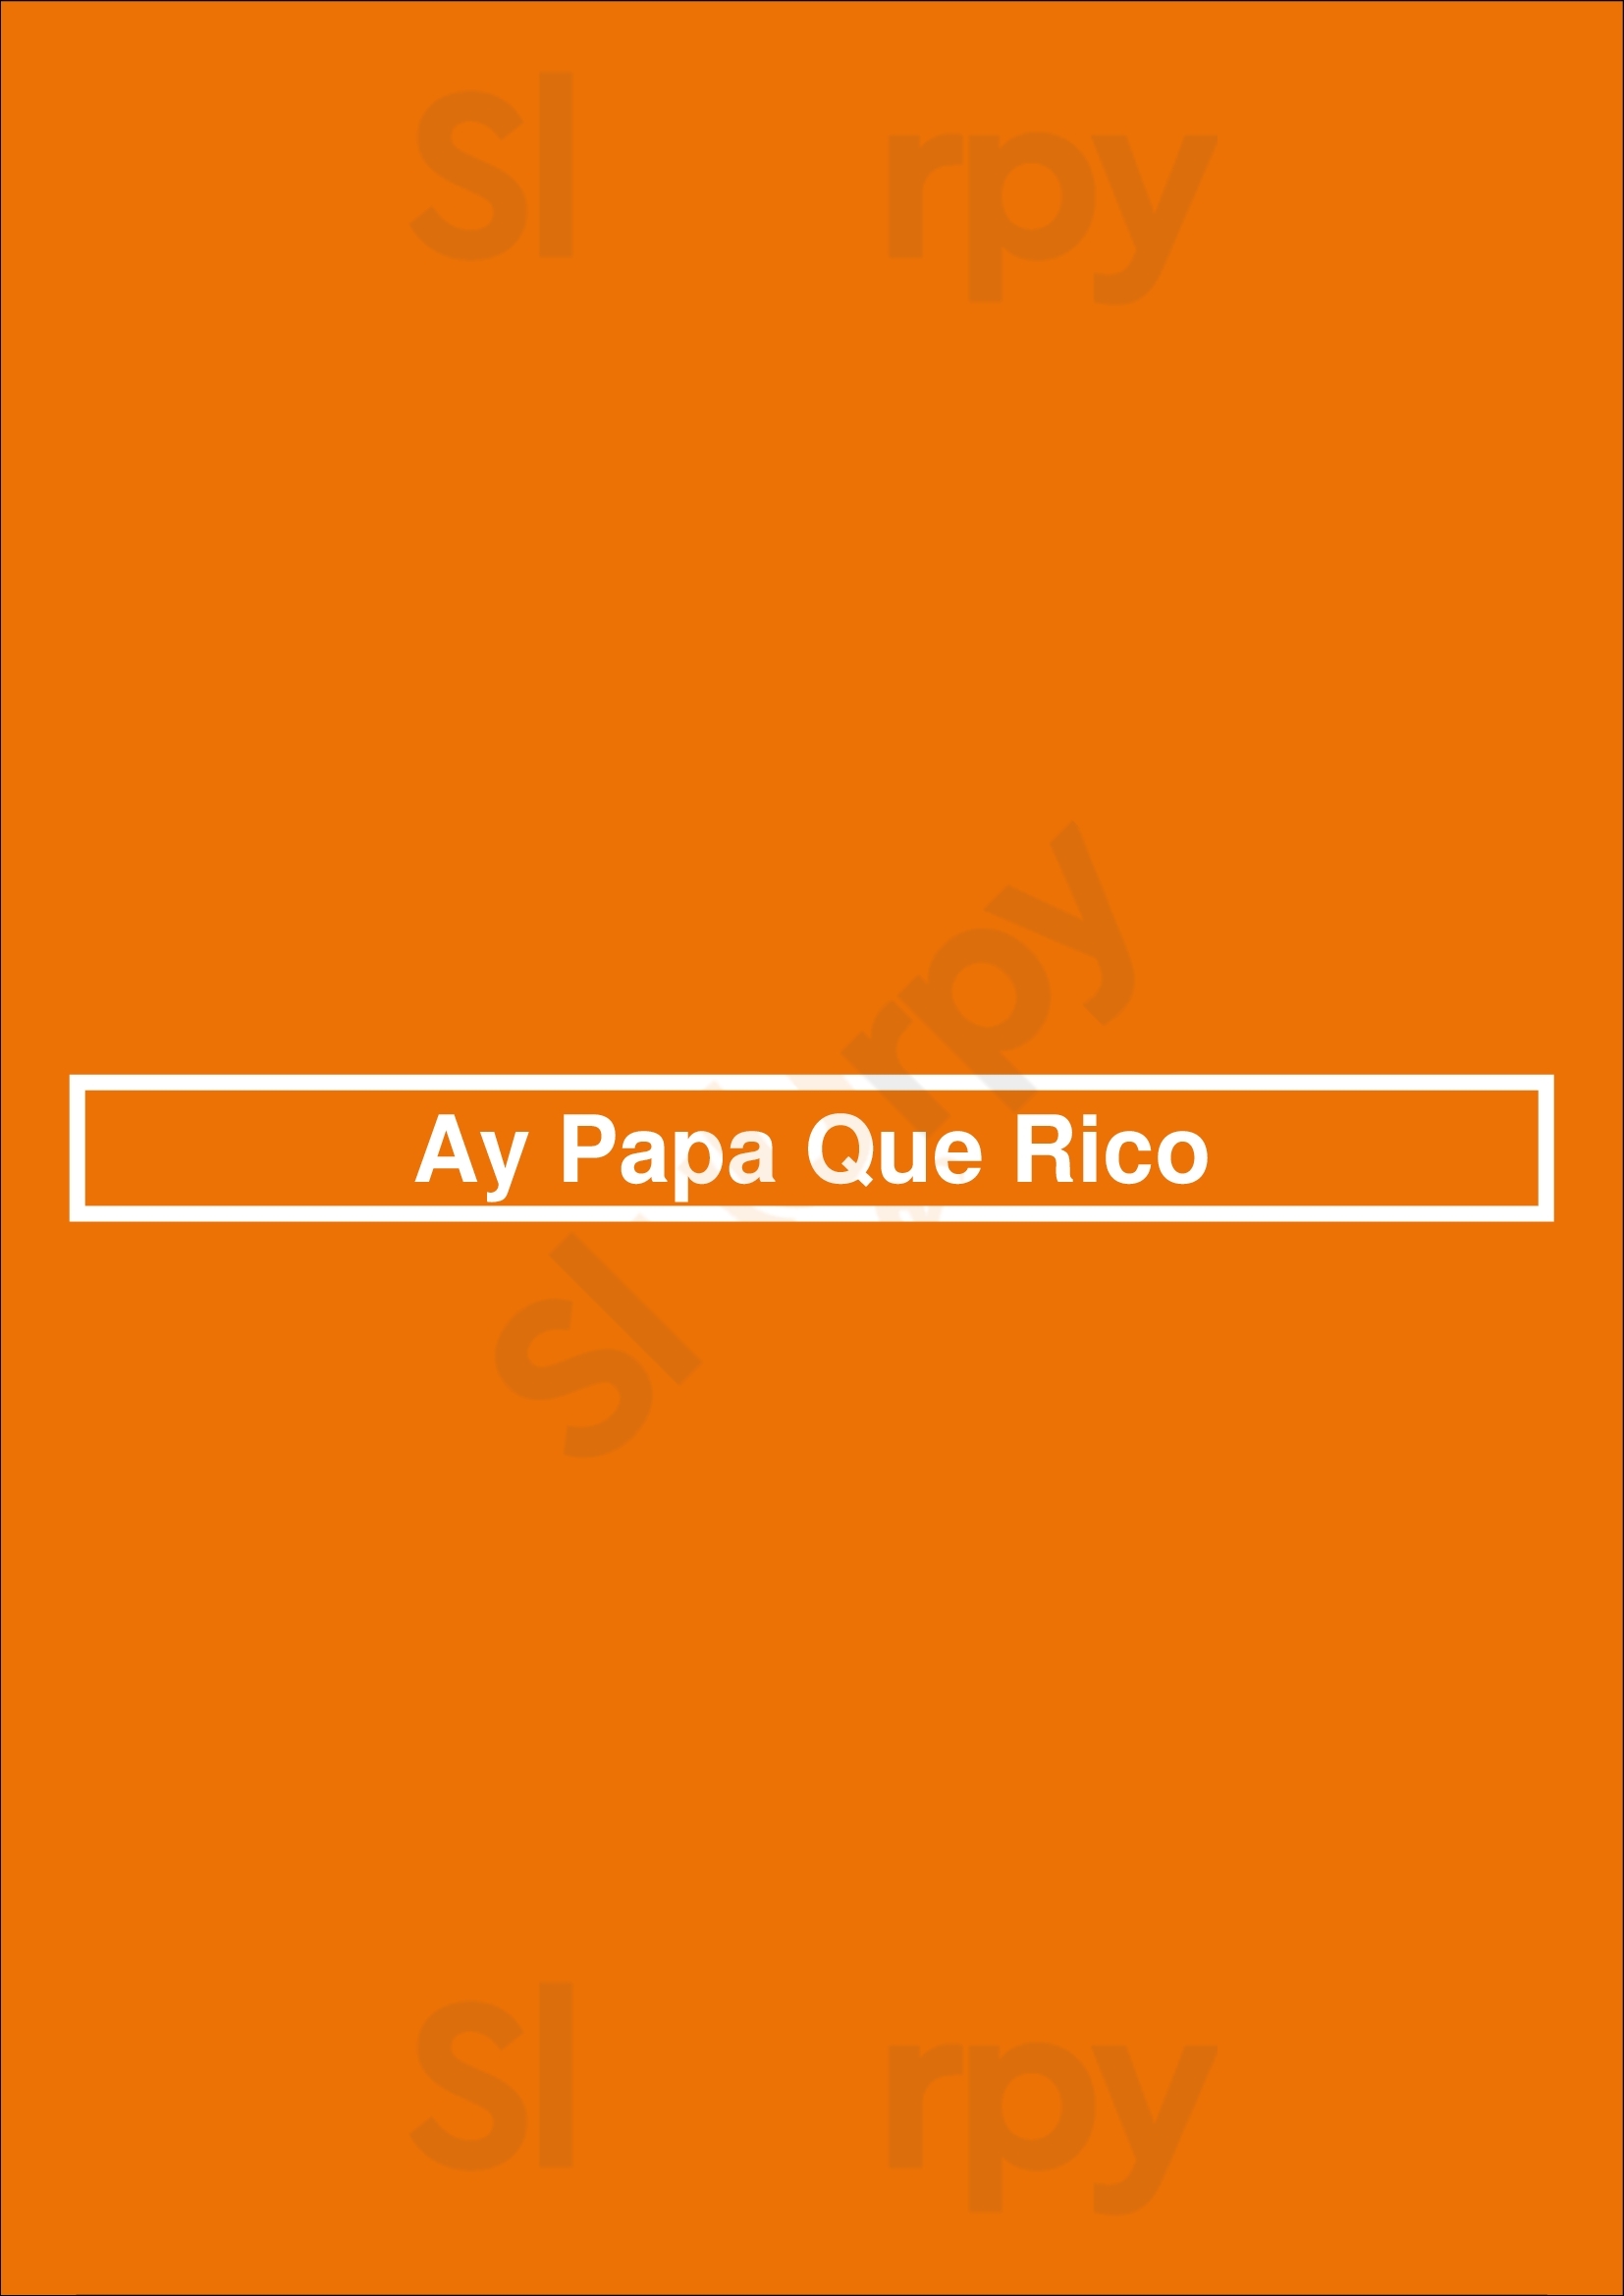 Ay Papa Que Rico Los Angeles Menu - 1